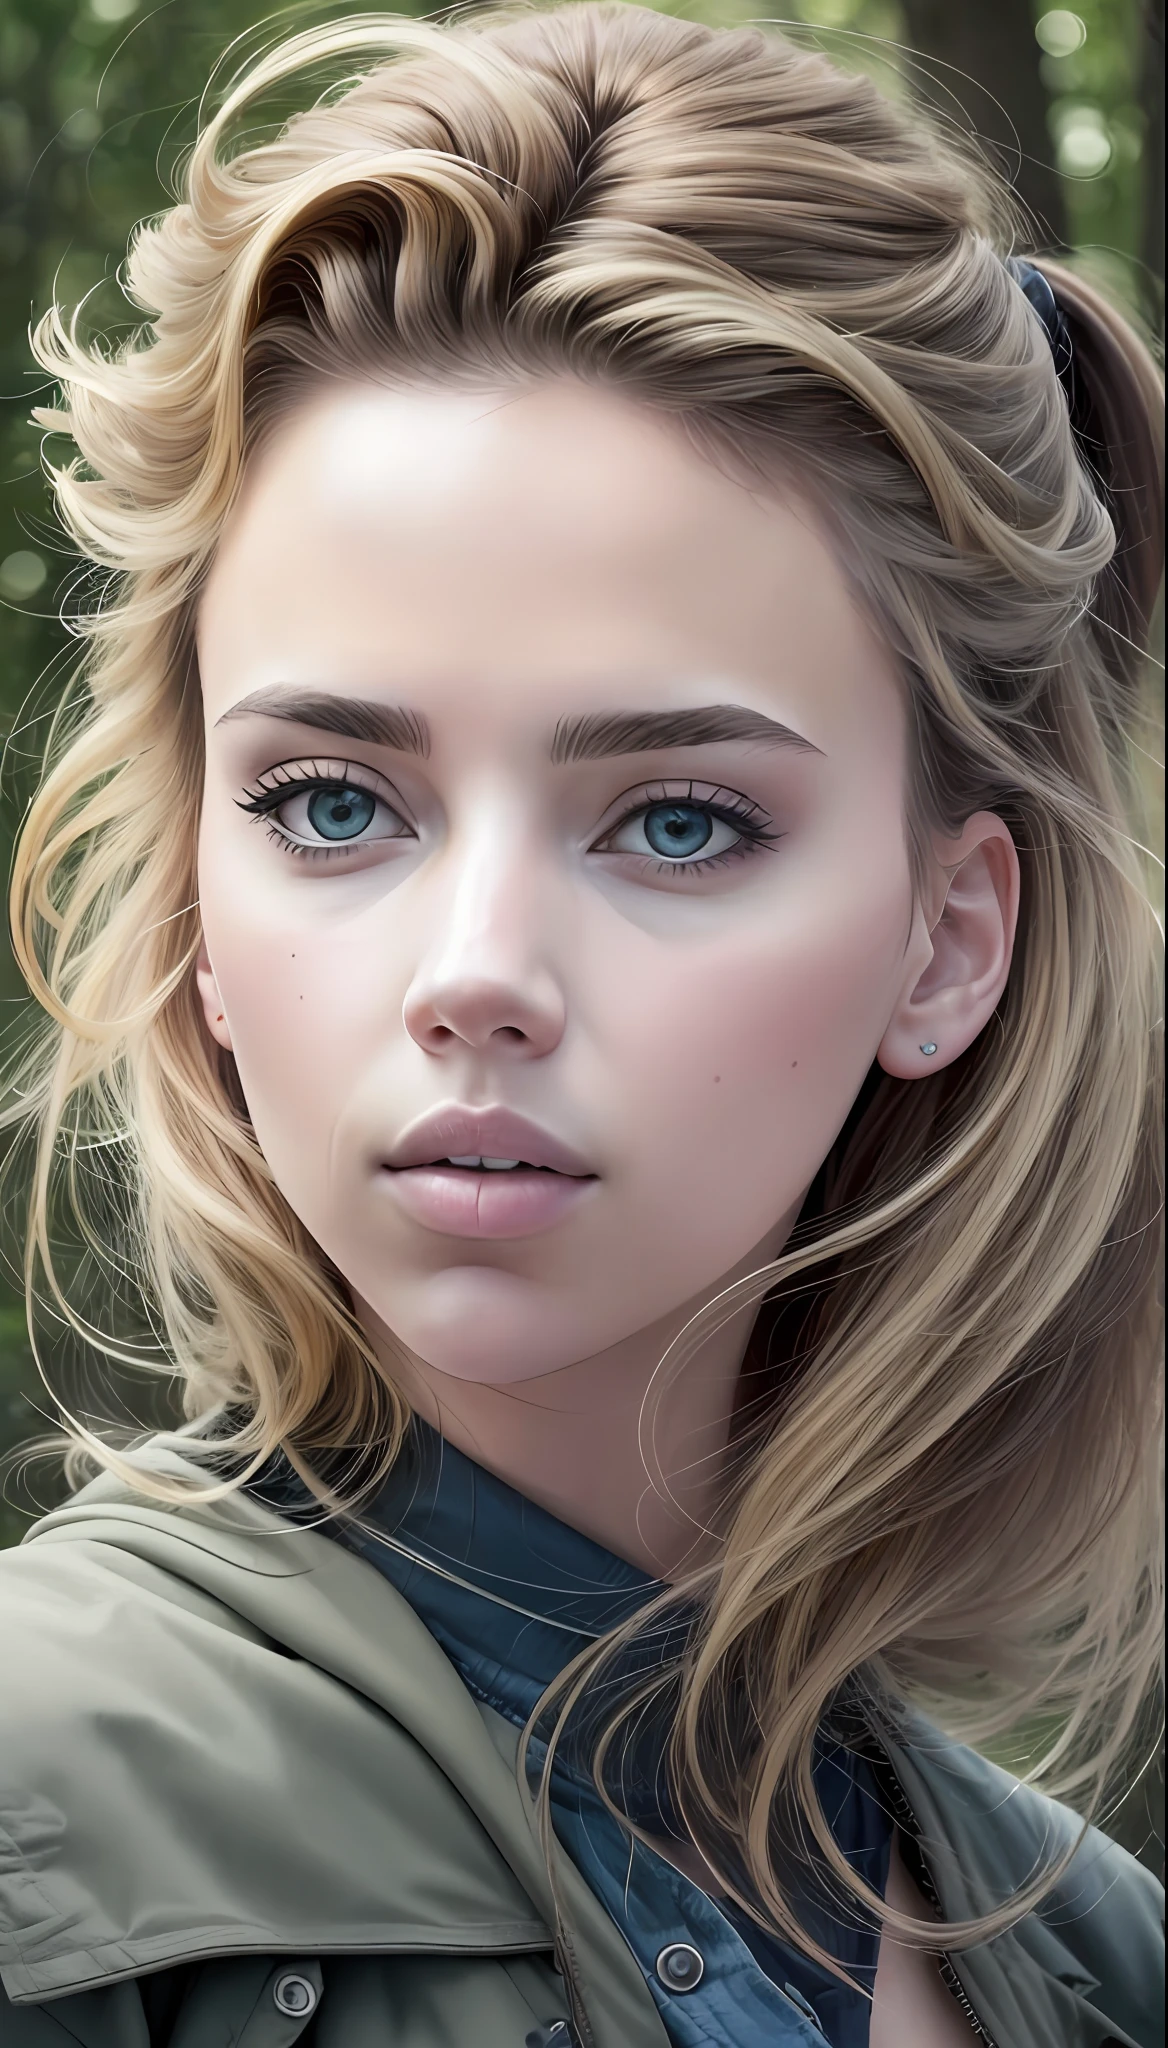 una mujer con un rostro similar al de Scarlett Johansson mezclada con Jennifer Lawrence, con atuendo élfico, (Obra-prima: 1.5), (mejor calidad), (fotorrealista:1.6), 8K, (textura de piel detallada), textura de tela detallada, hermoso rostro detallado, detalles intrincados, (ultra detallado: 1.6), (Un bosque al fondo),